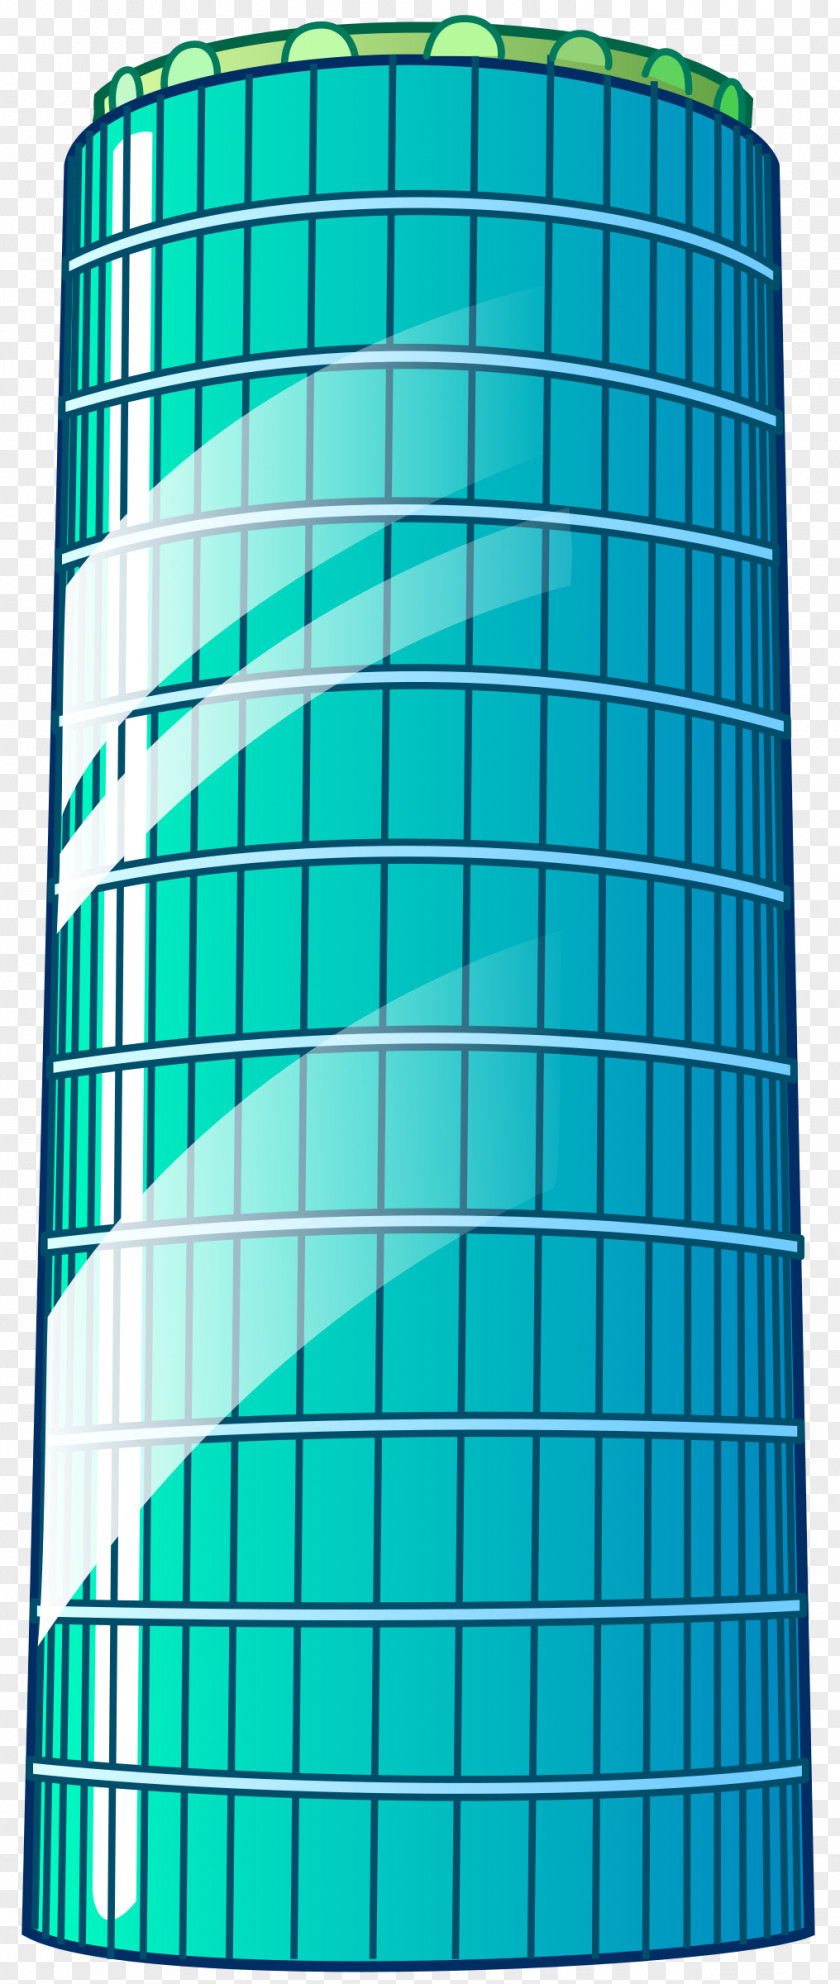 Cao High-rise Building Facade Clip Art PNG